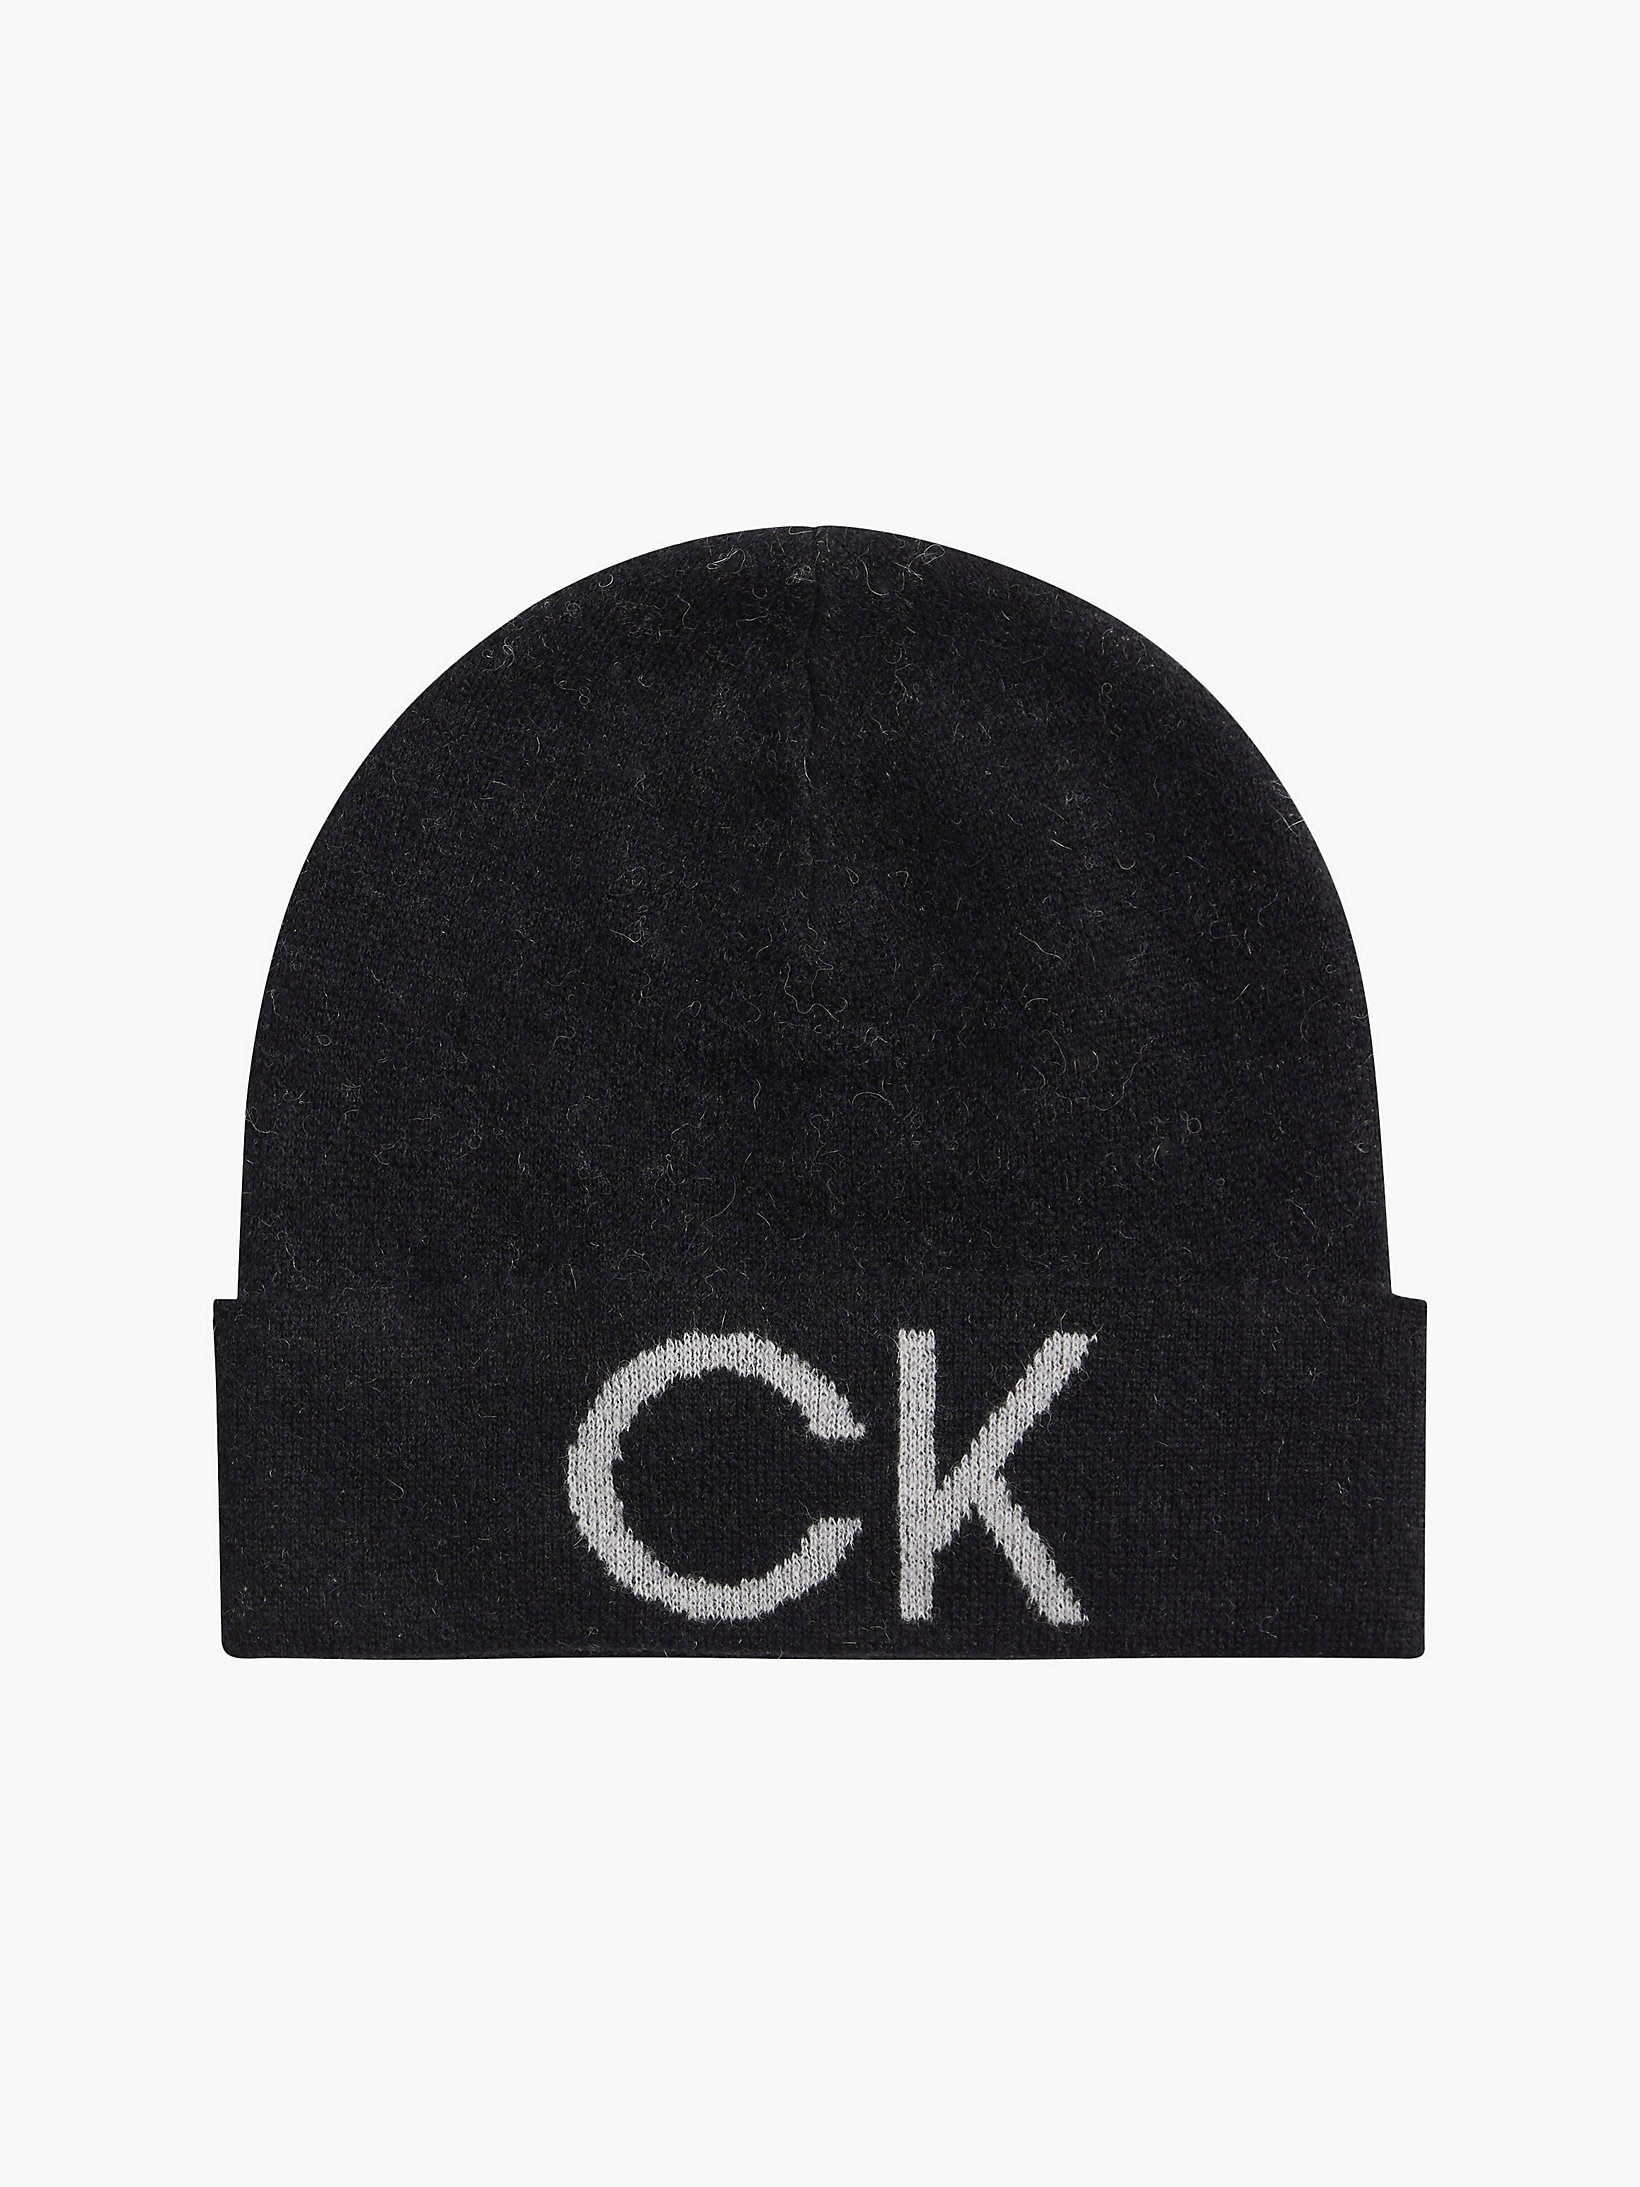 CK Black Wool Blend Beanie undefined women Calvin Klein